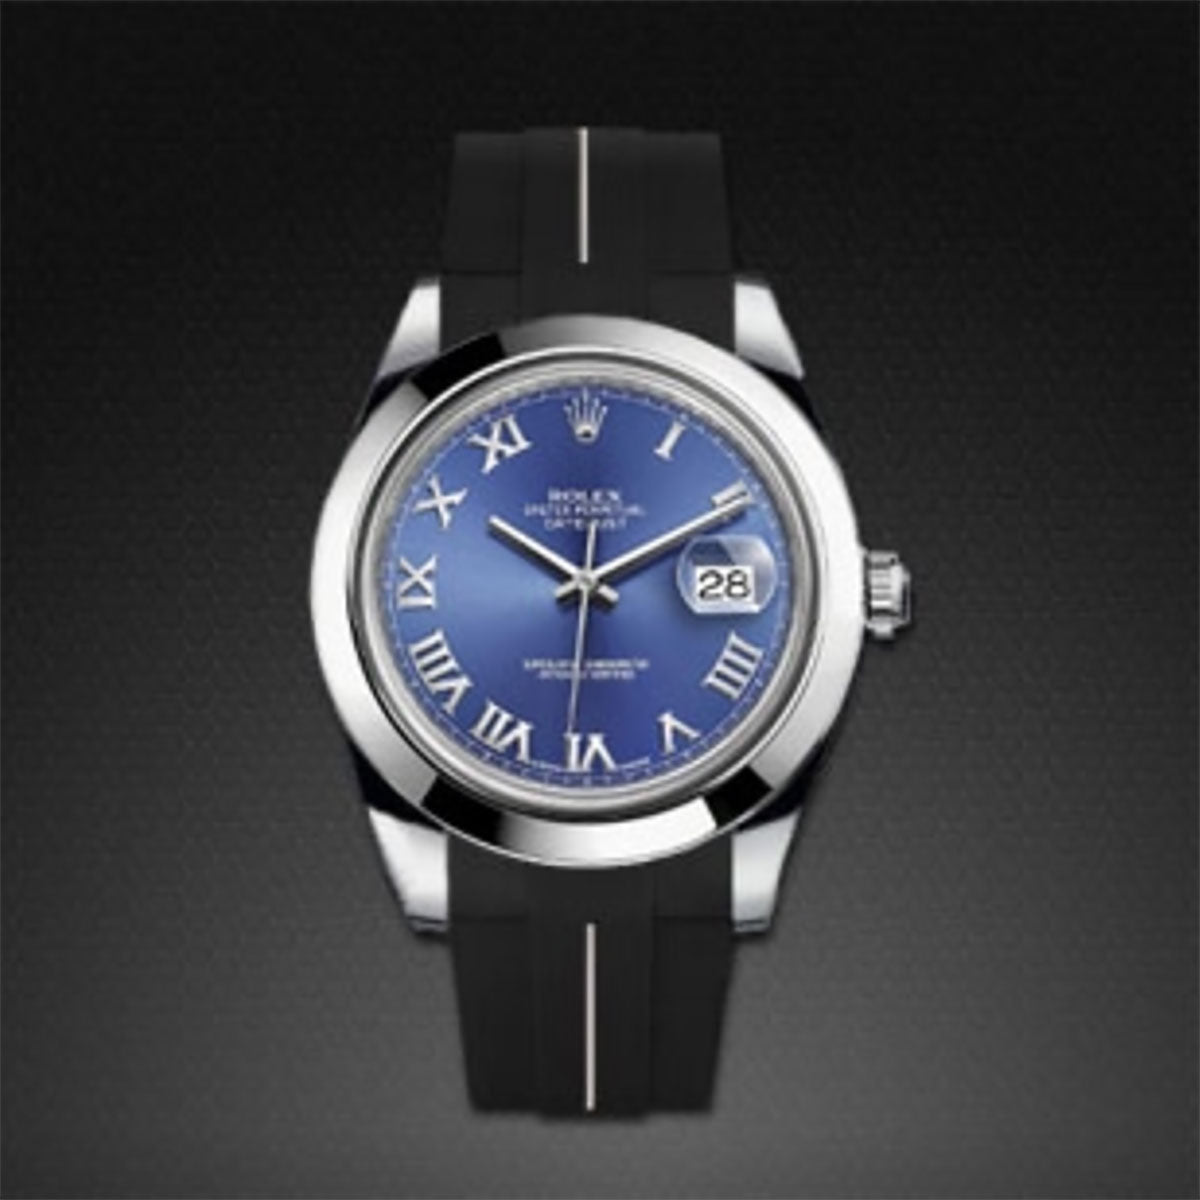 Rolex - Rubber B - Bracelet caoutchouc pour Datejust II 41 mm - Série classique - watch band leather strap - ABP Concept -